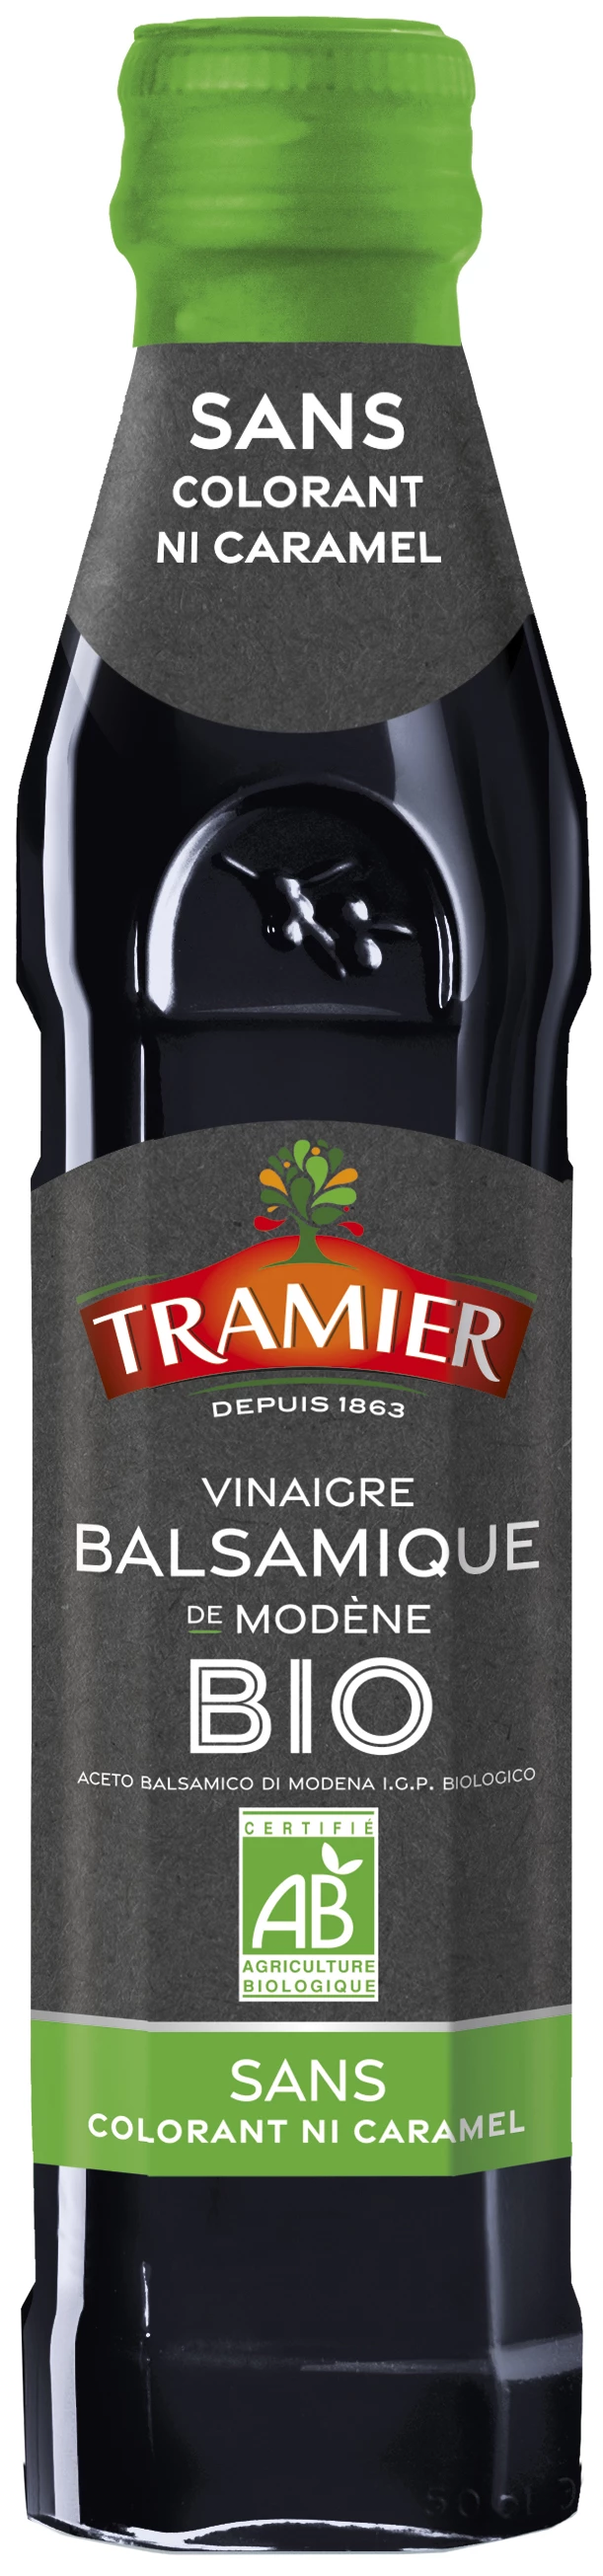 Vinaigre Balsamique de Modene Bio 25cl - TRAMIER